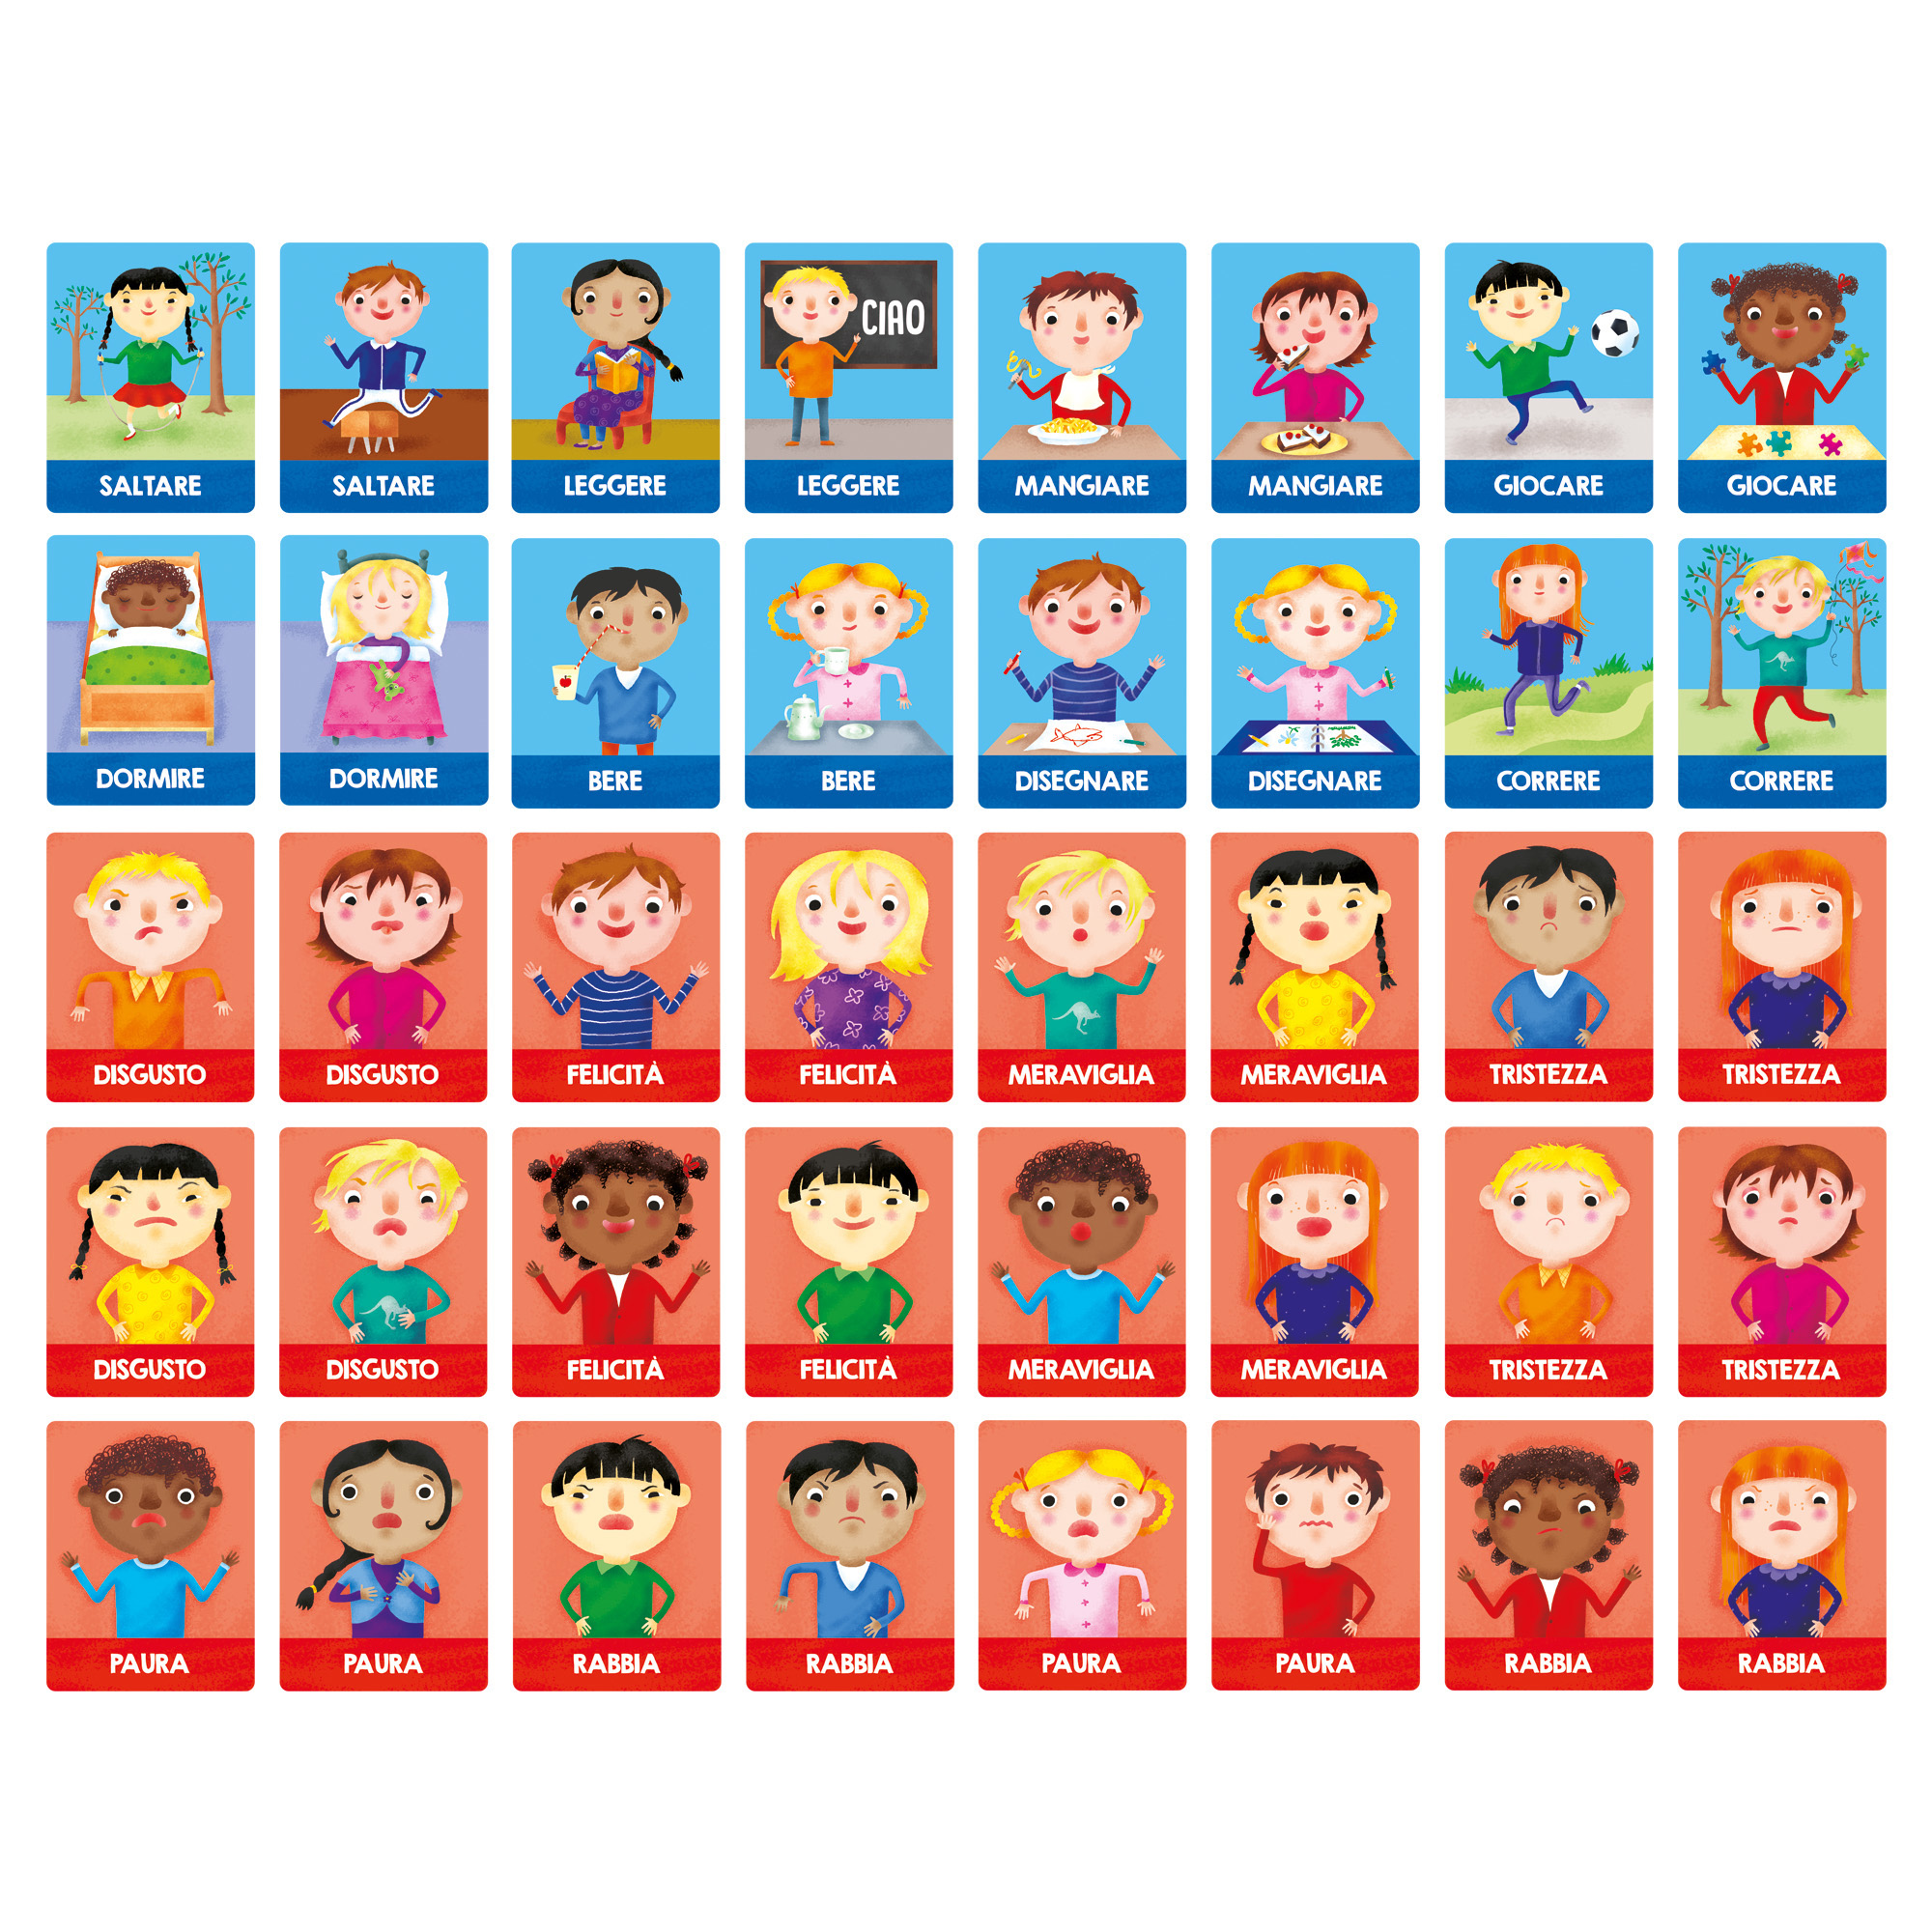 Flashcards Montessori Emozioni e Azioni - Headu